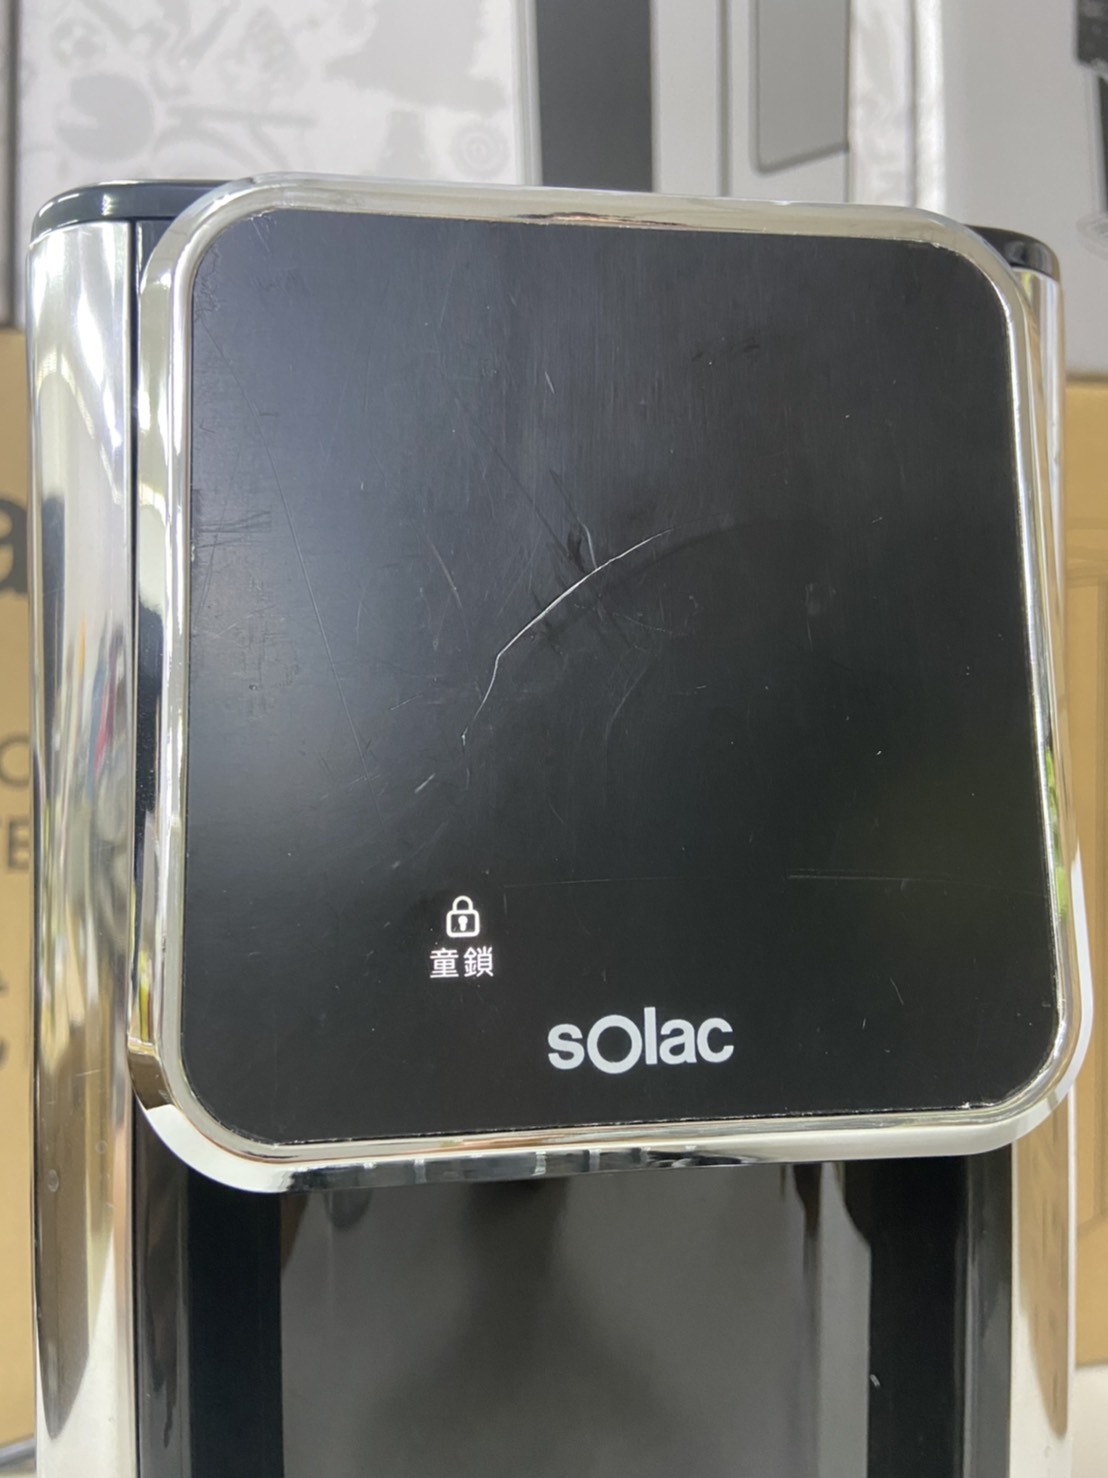 sOlac 瞬熱式淨水器 SMA-T20S 免安裝的小濾水器